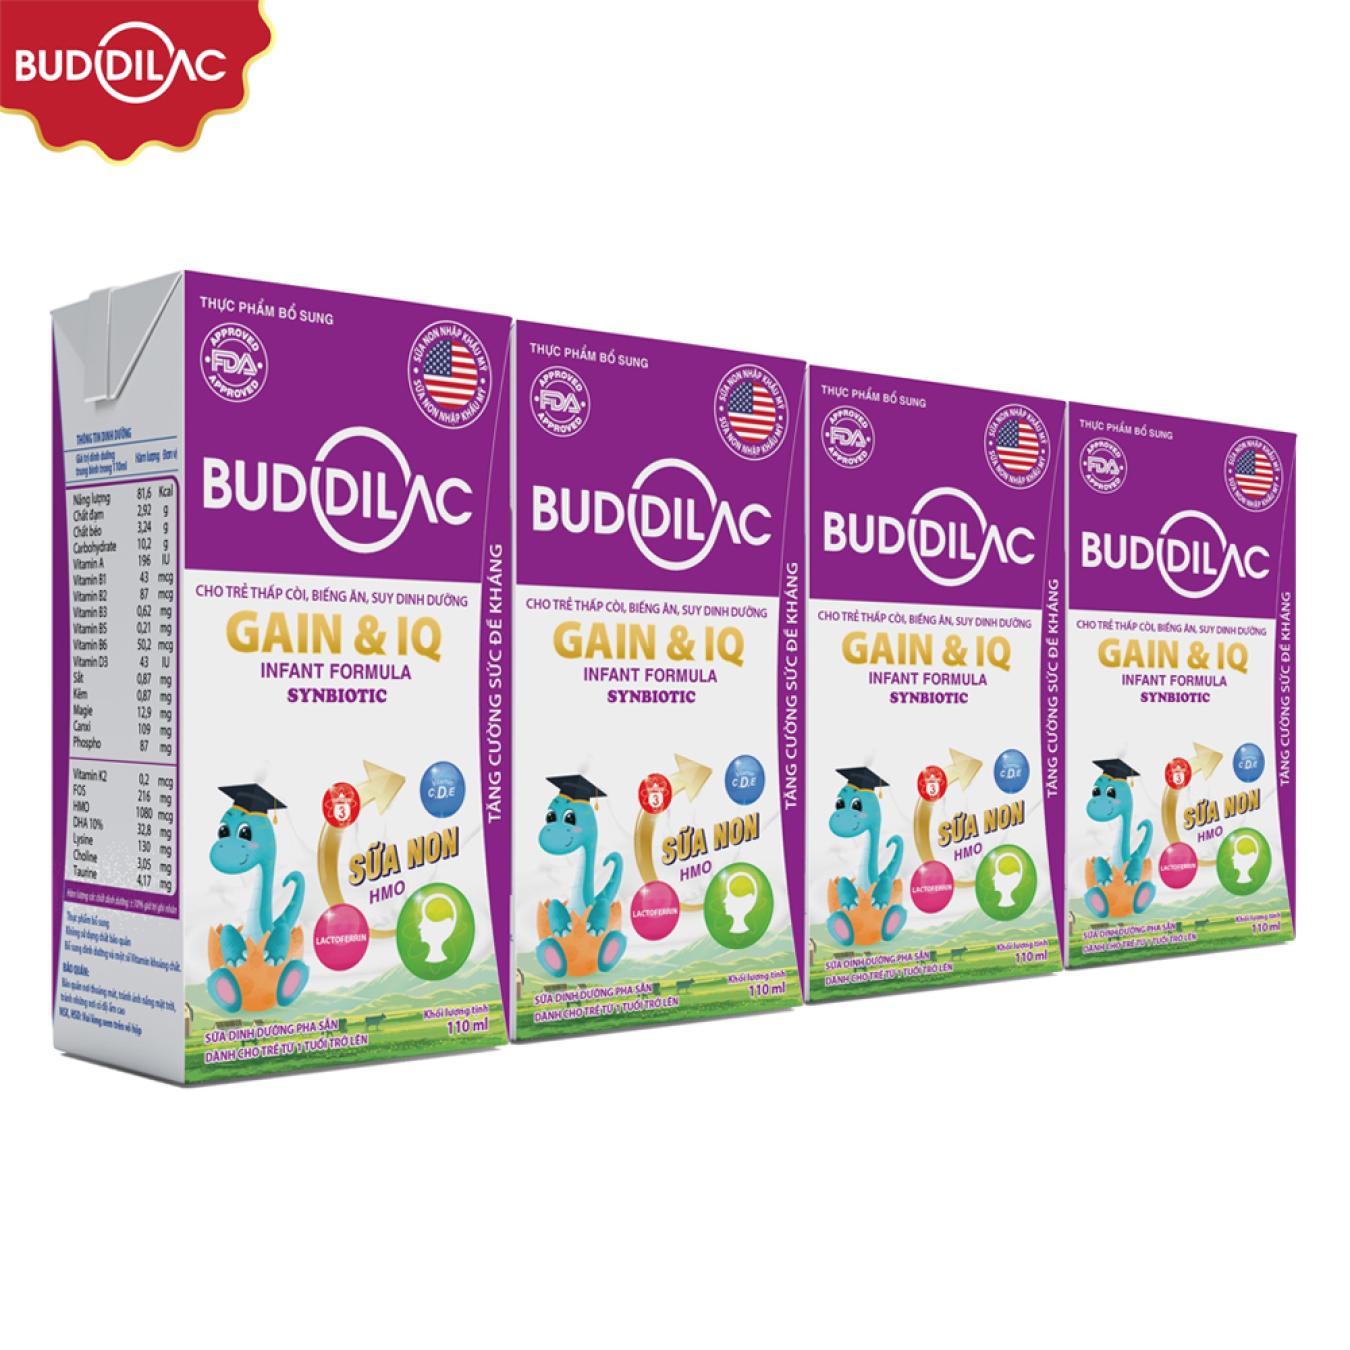 Sữa pha sẵn cao năng lượng Buddilac Gain & IQ 48 hộp